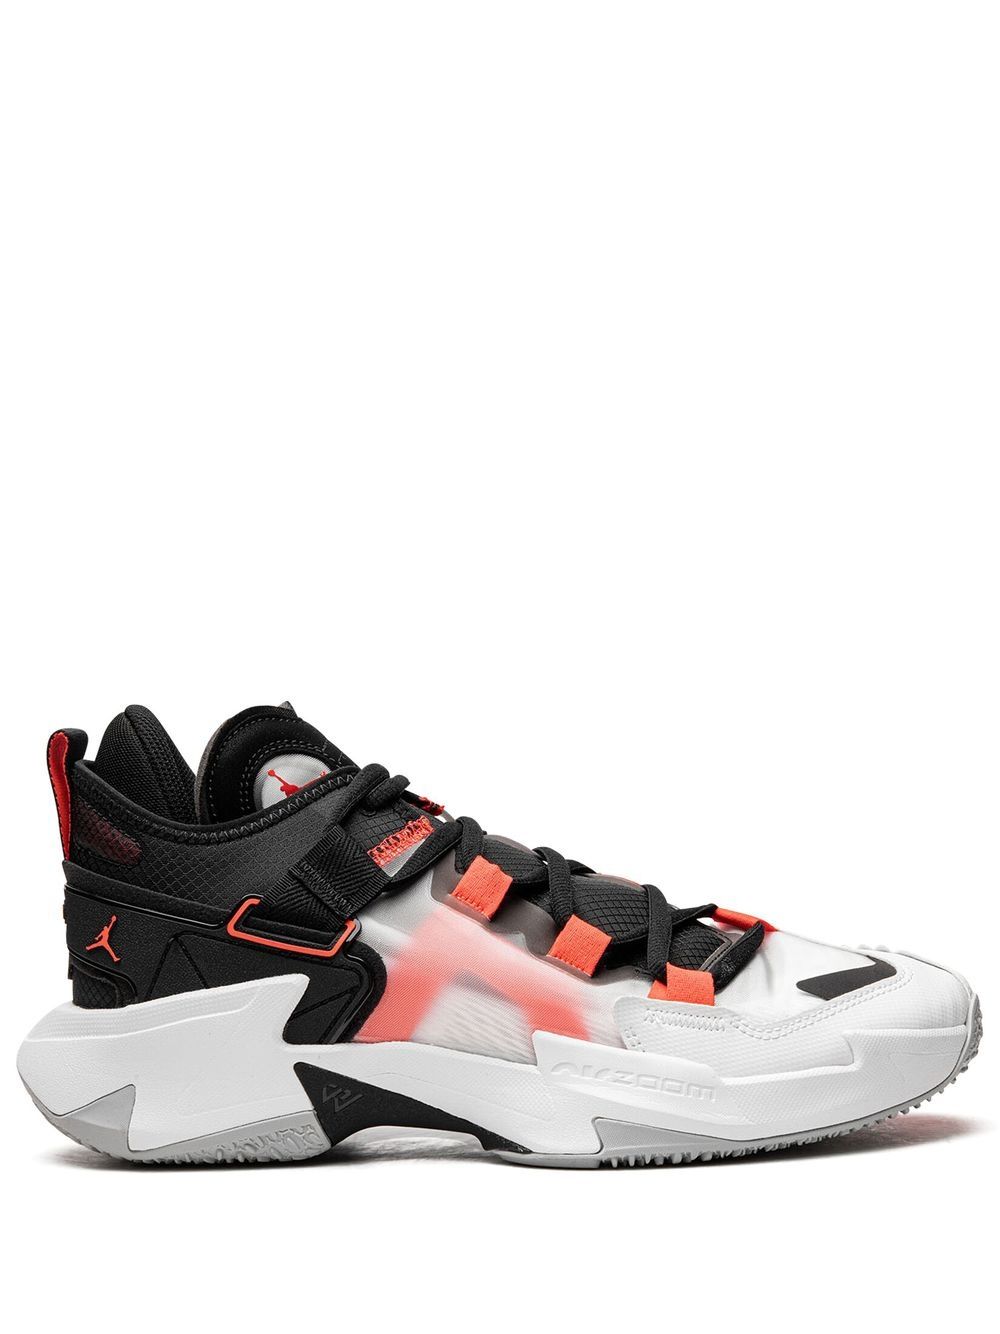 Jordan Why Not .5 "Bloodline" sneakers - Black von Jordan